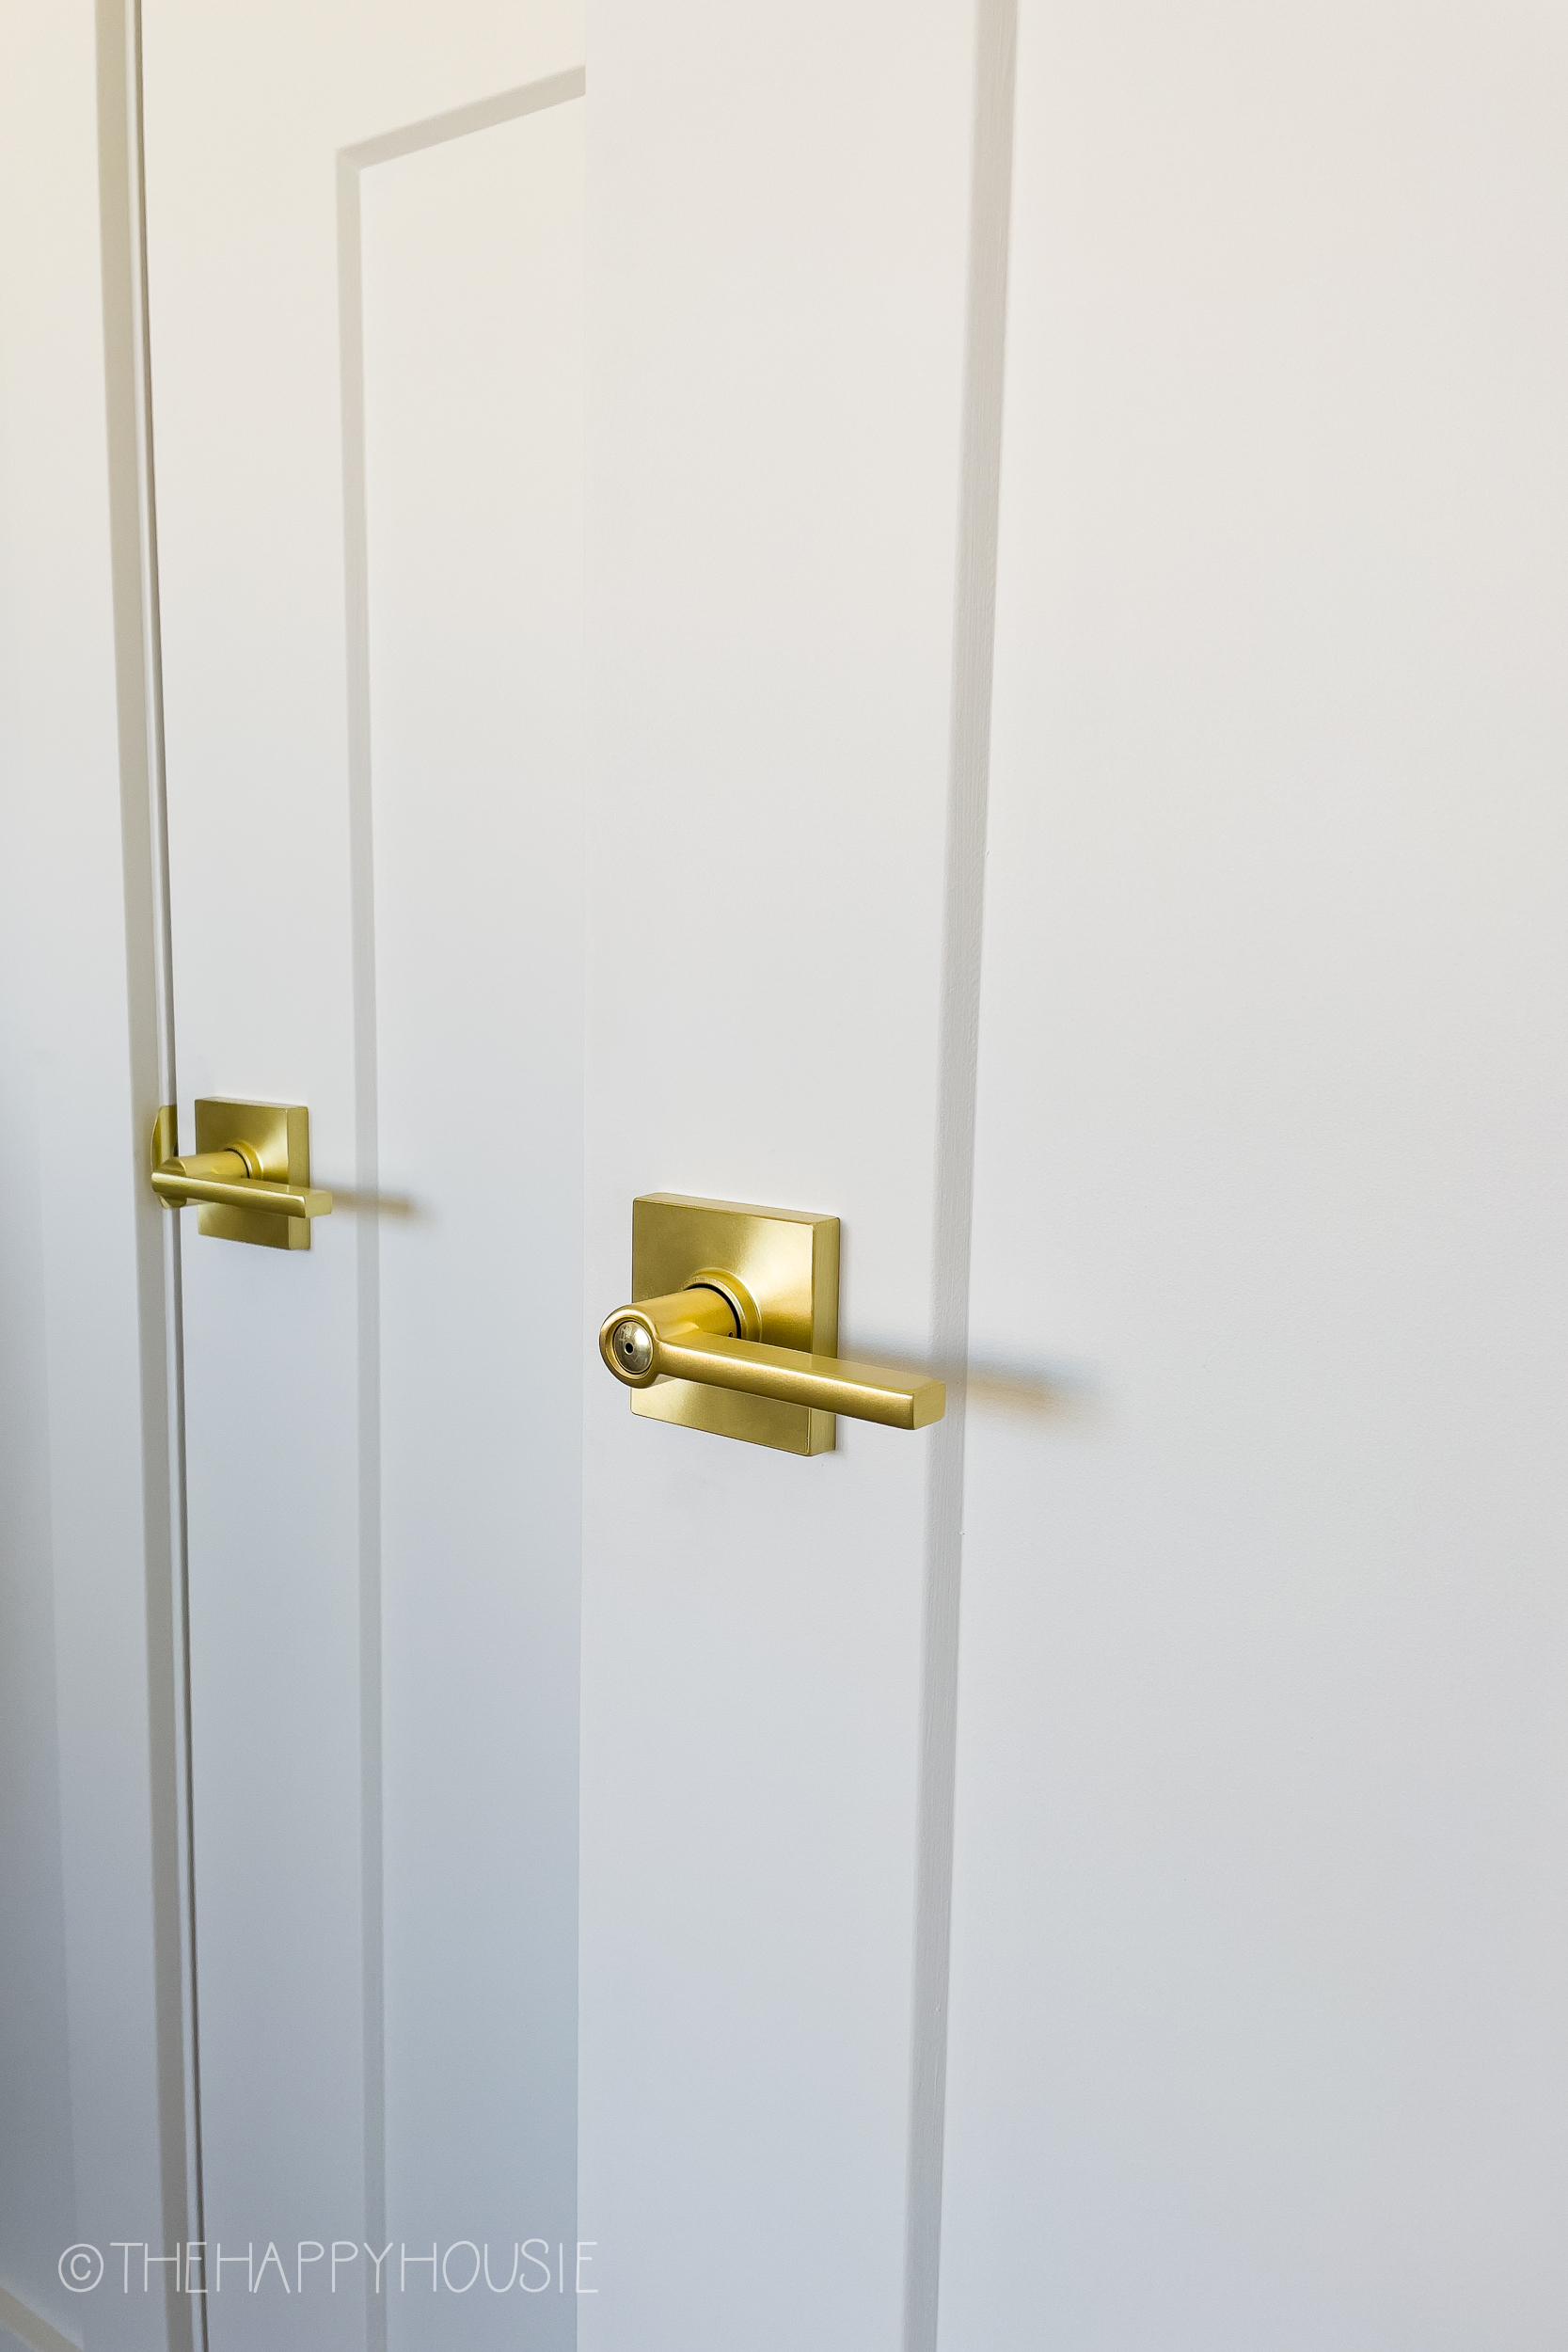 Our Gold Schlage Door Hardware in Satin Brass